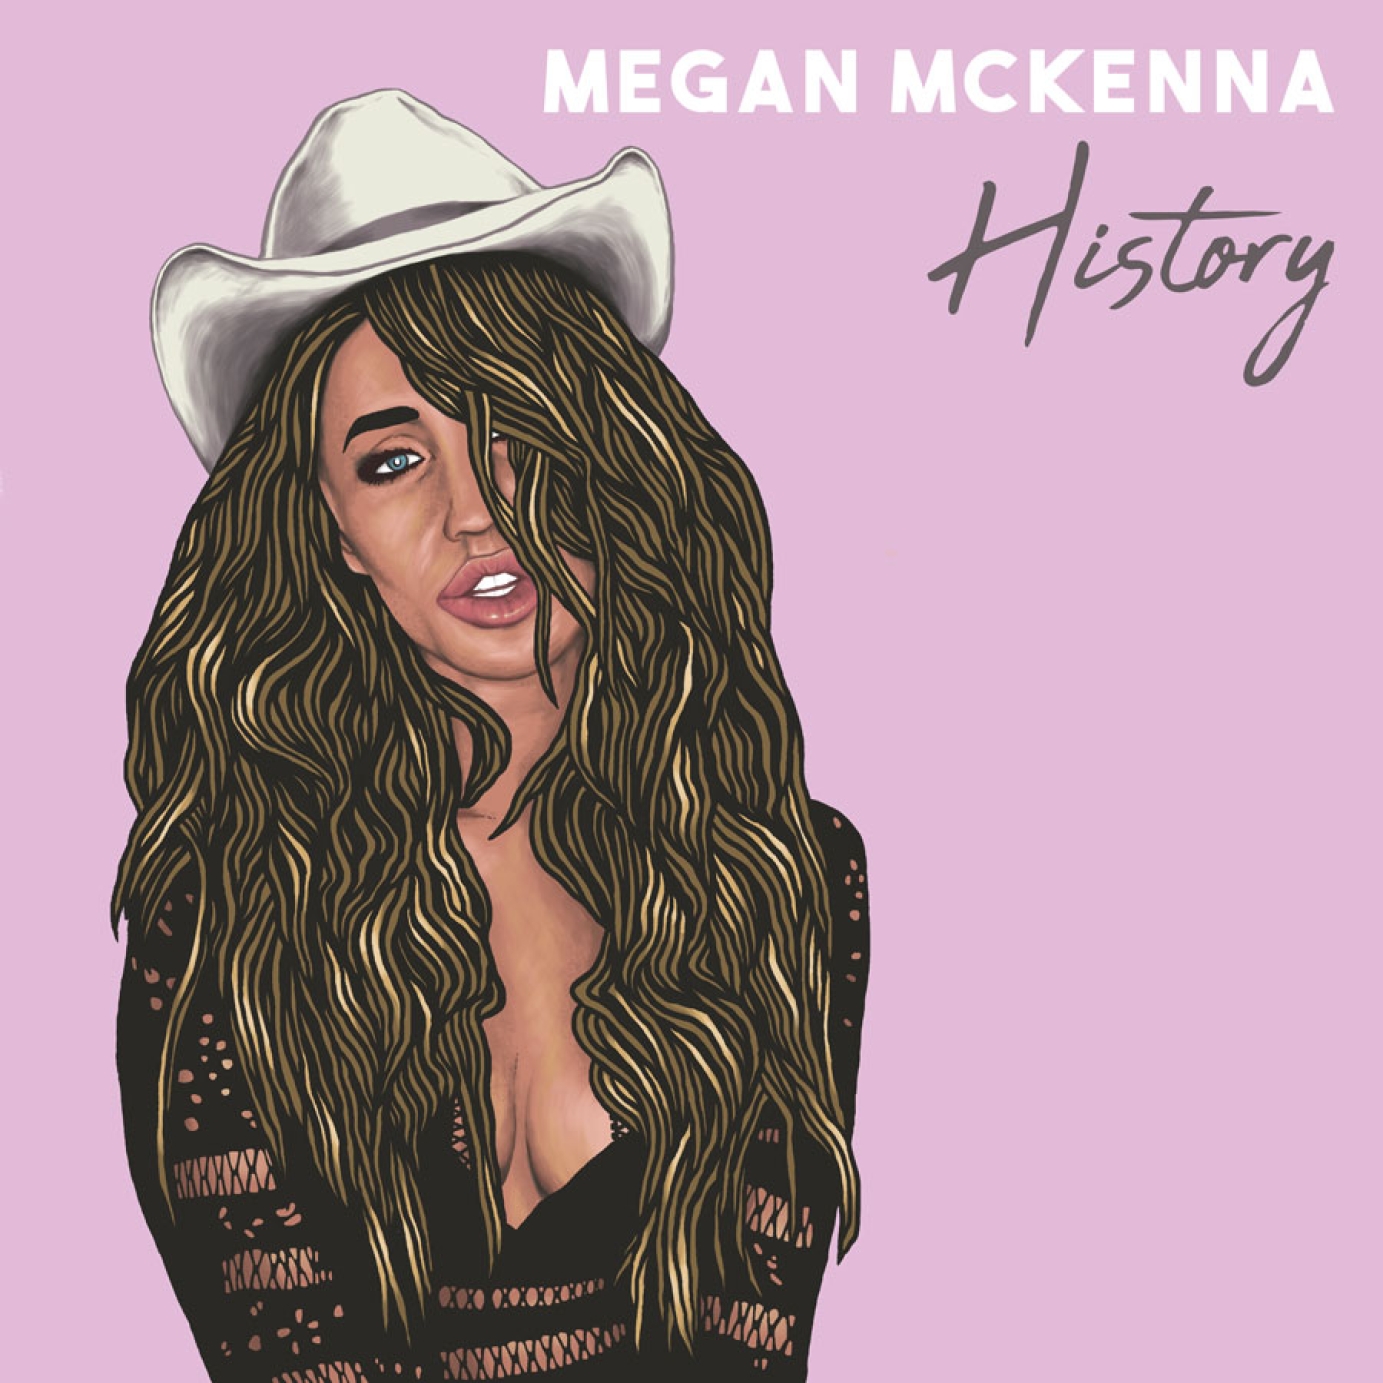 Graphic design for Megan McKenna by James C Wilson